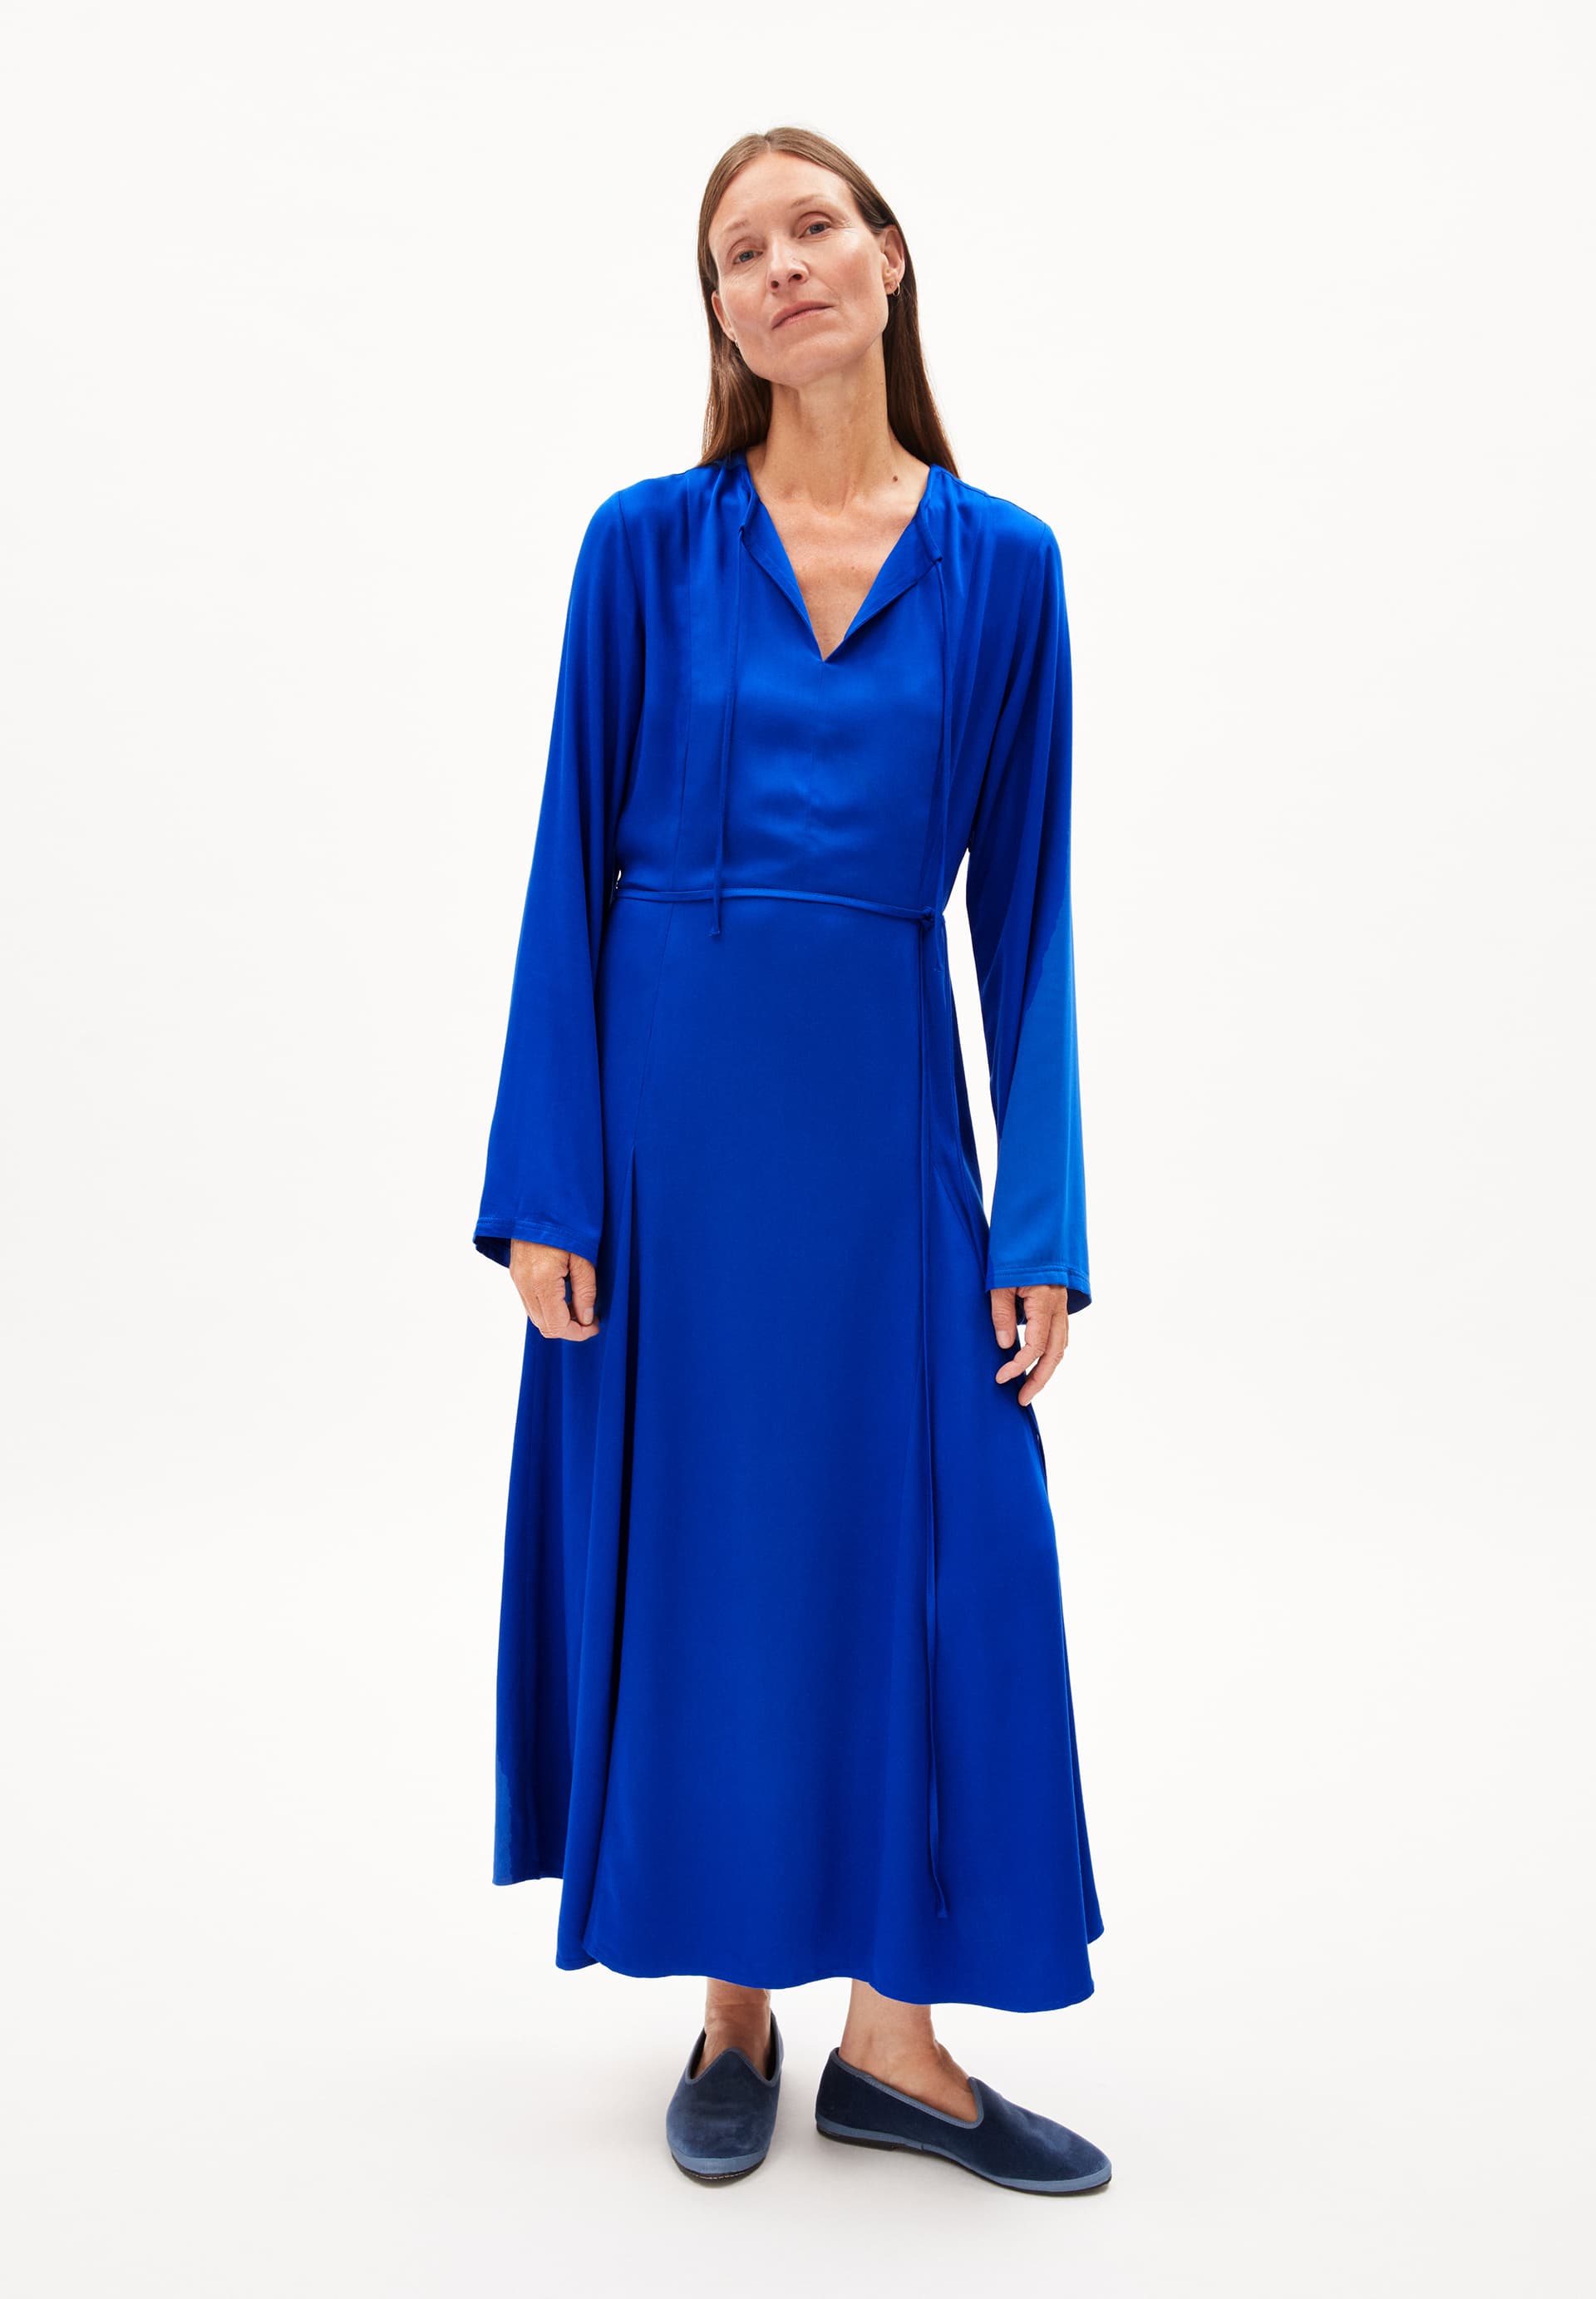 MARIOLAANA Woven Dress Regular Fit made of LENZING™ ECOVERO™ Viscose